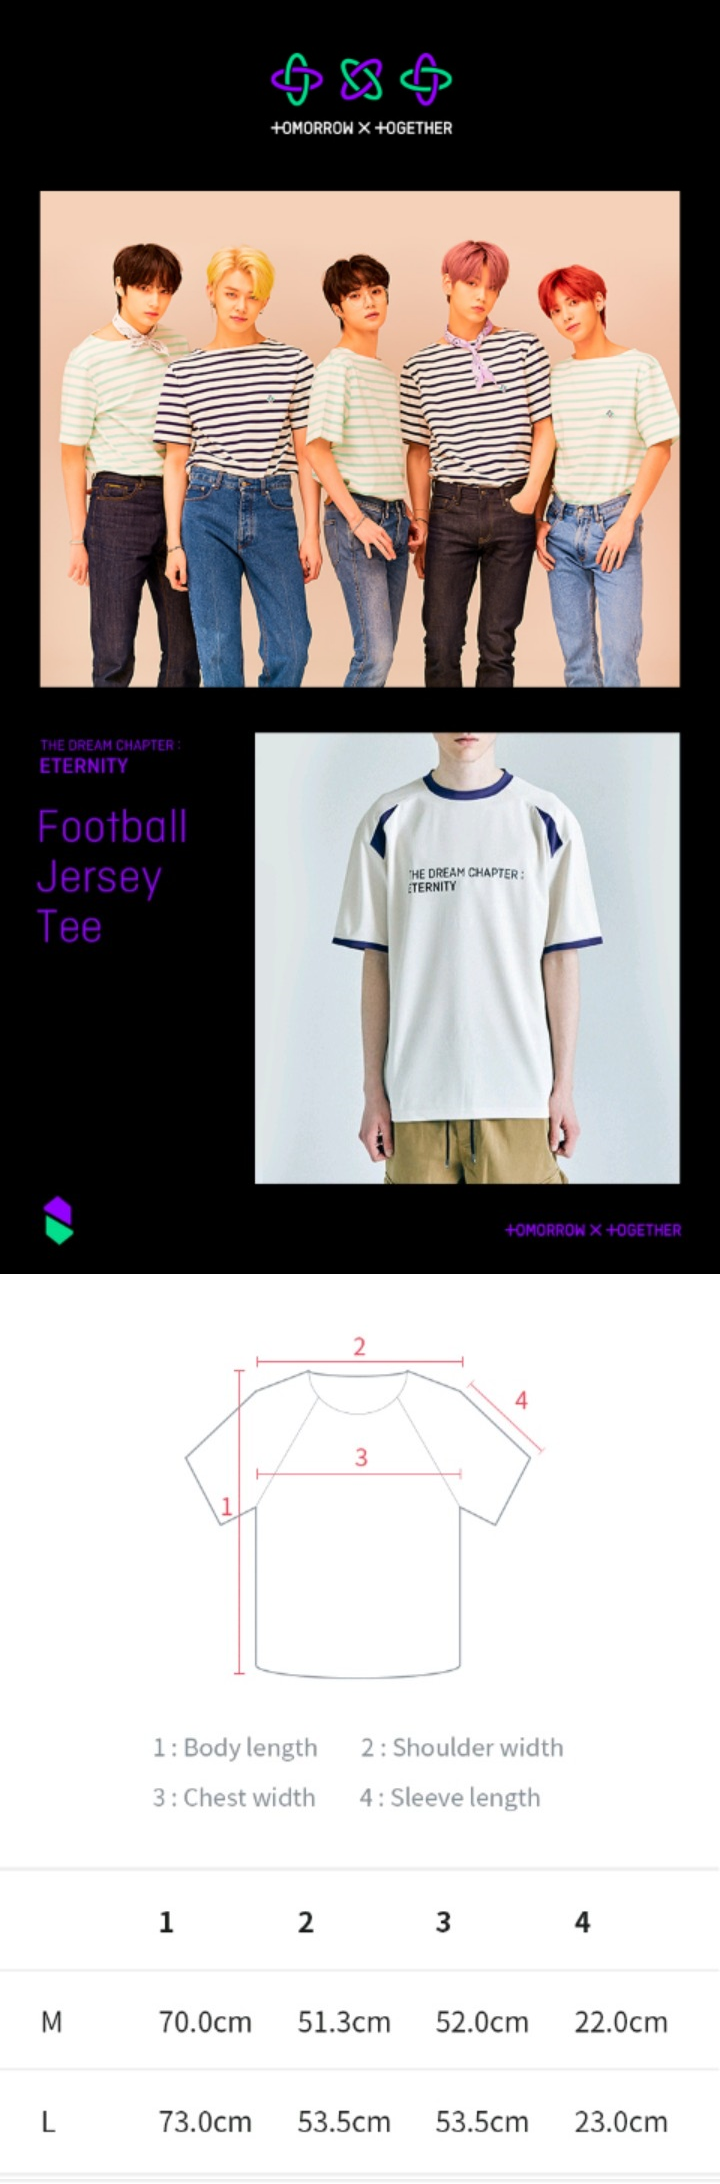 TXT Eternity Uniform - Football Jersey Tee